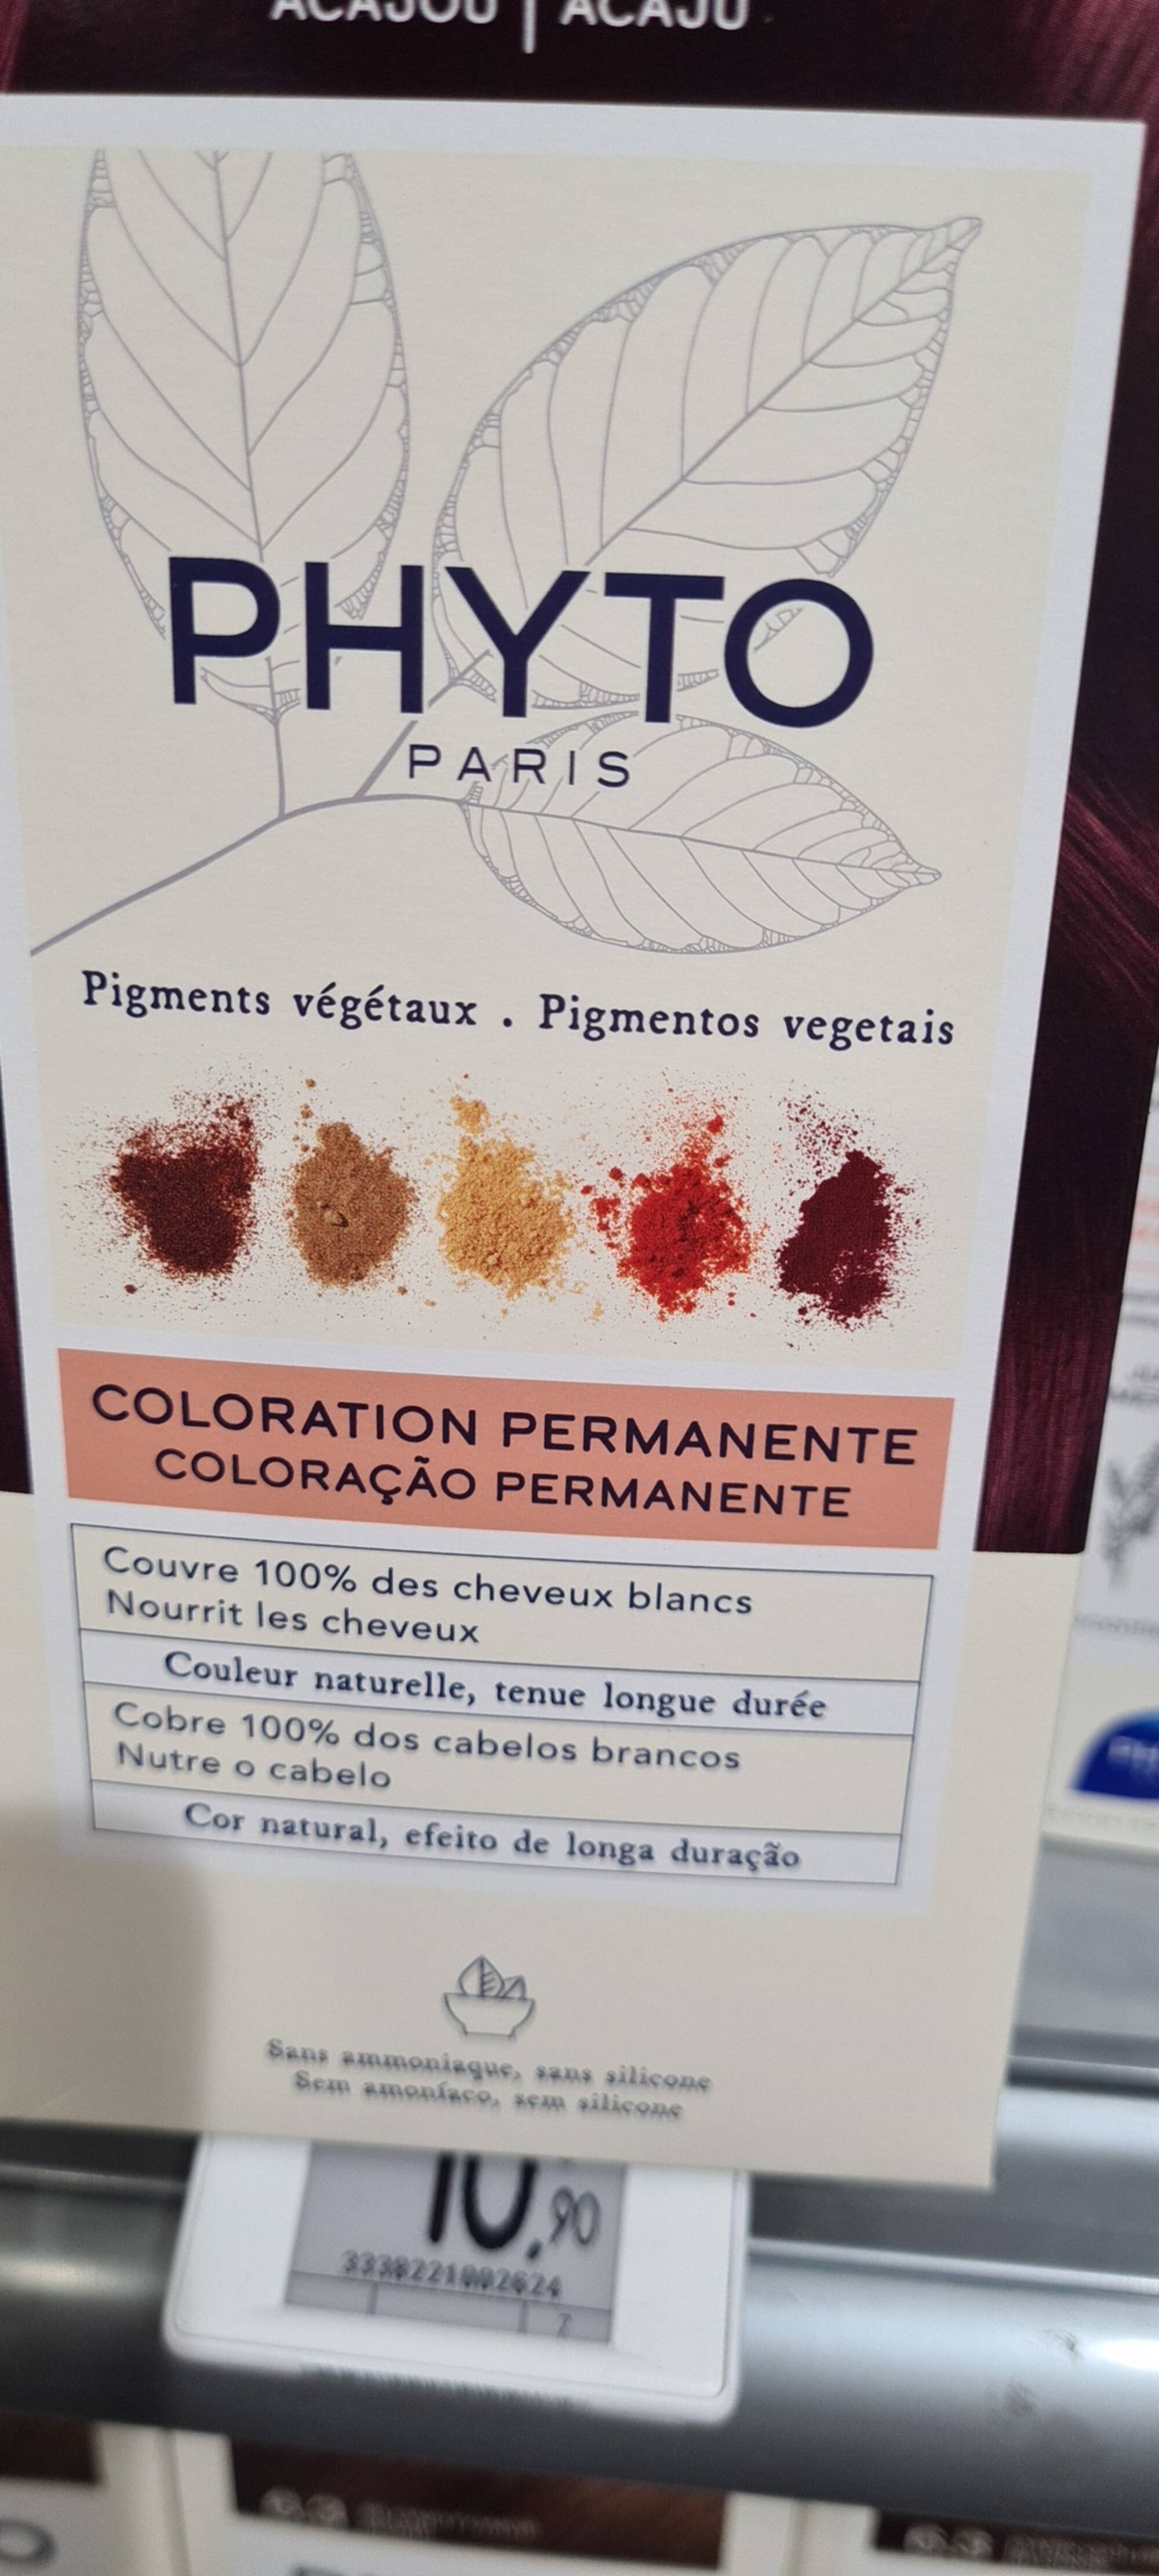 PHYTO - Coloration permanente pigments végétaux